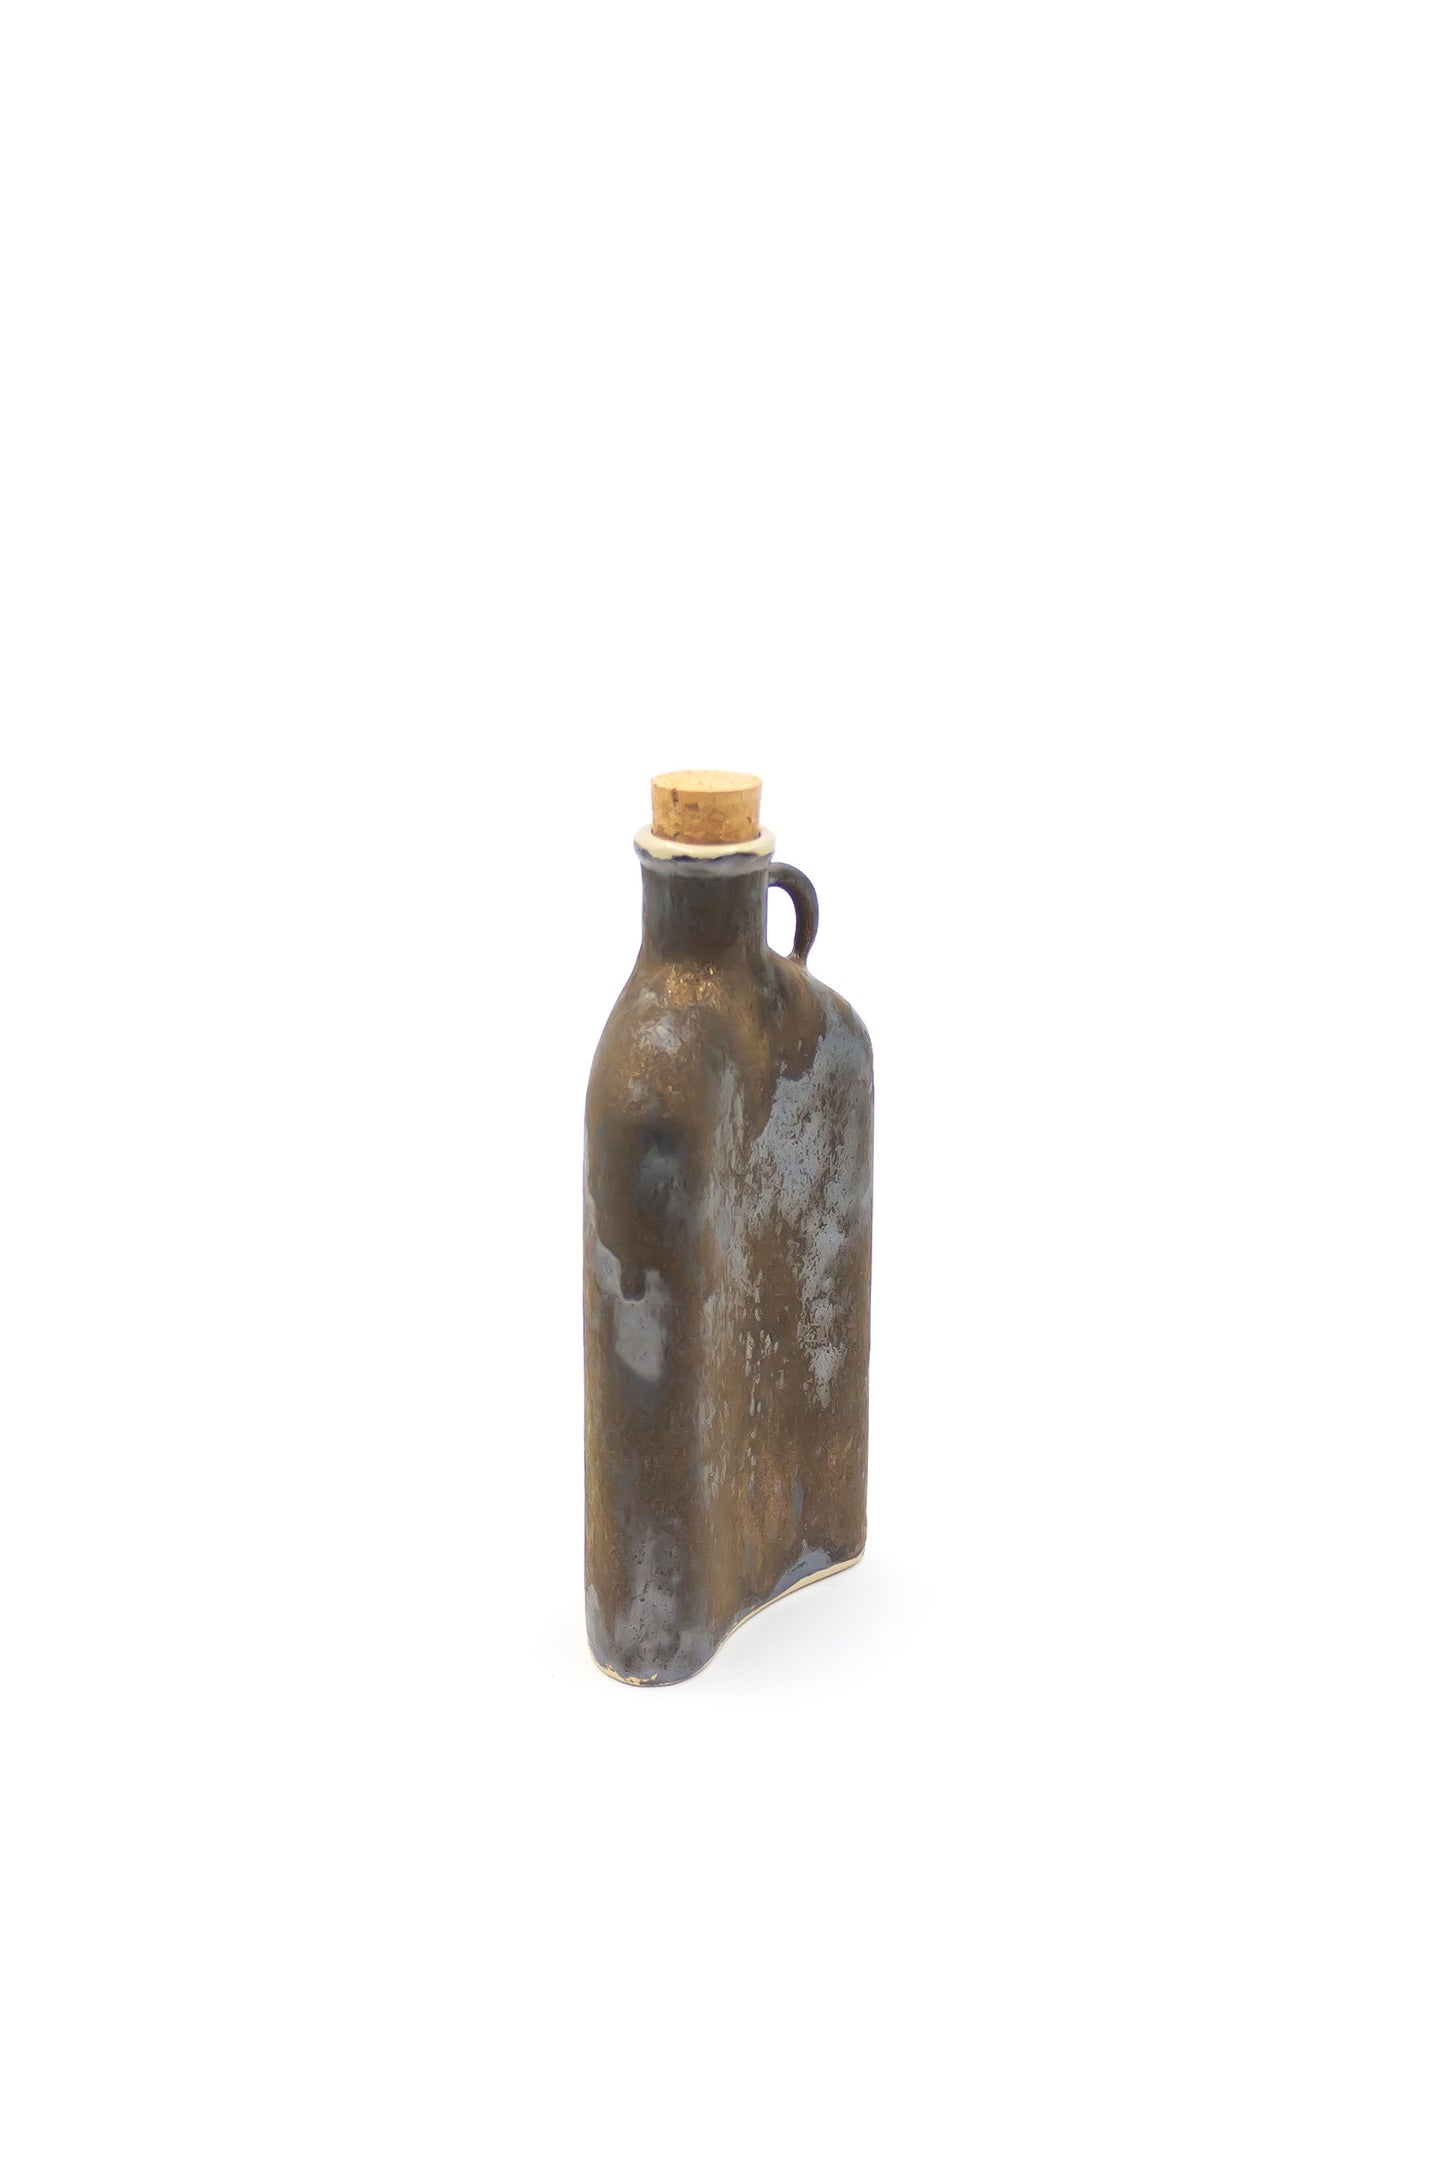 Butelka ceramiczna w kolorze złoto-srebrnym